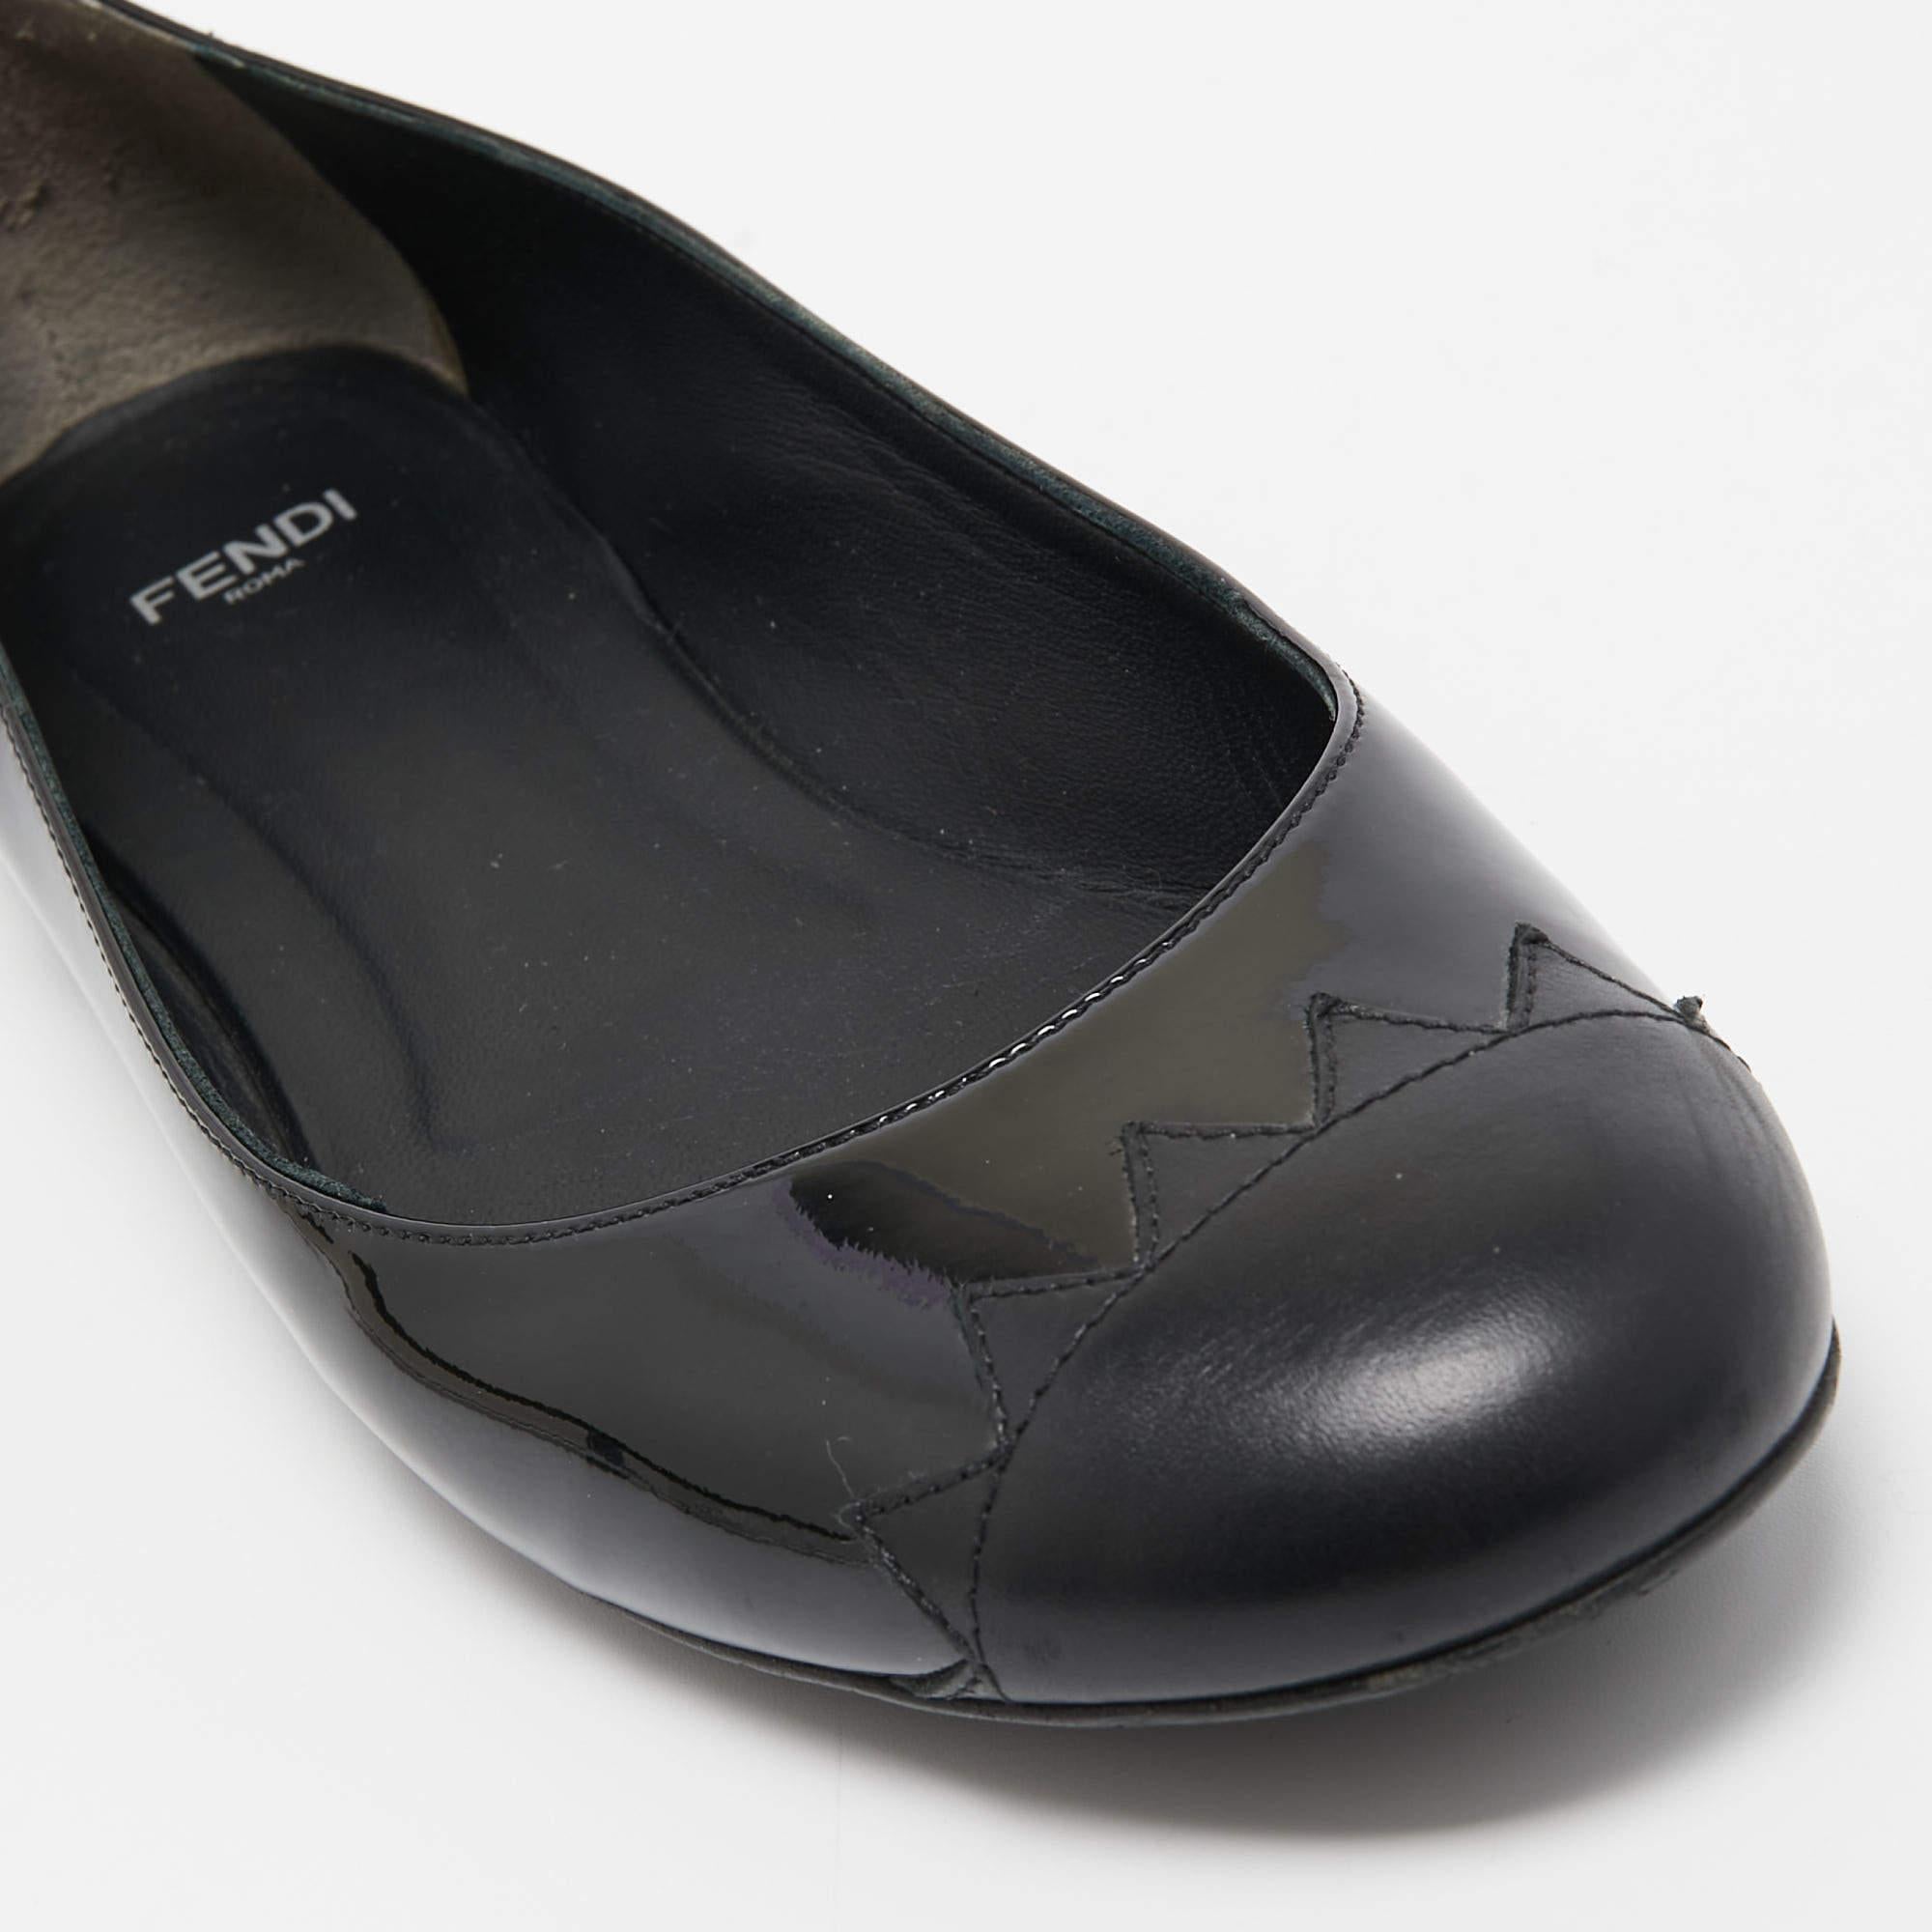 Fendi Black Patent Leather Cap Toe Ballet Flats Size 37.5 For Sale 3